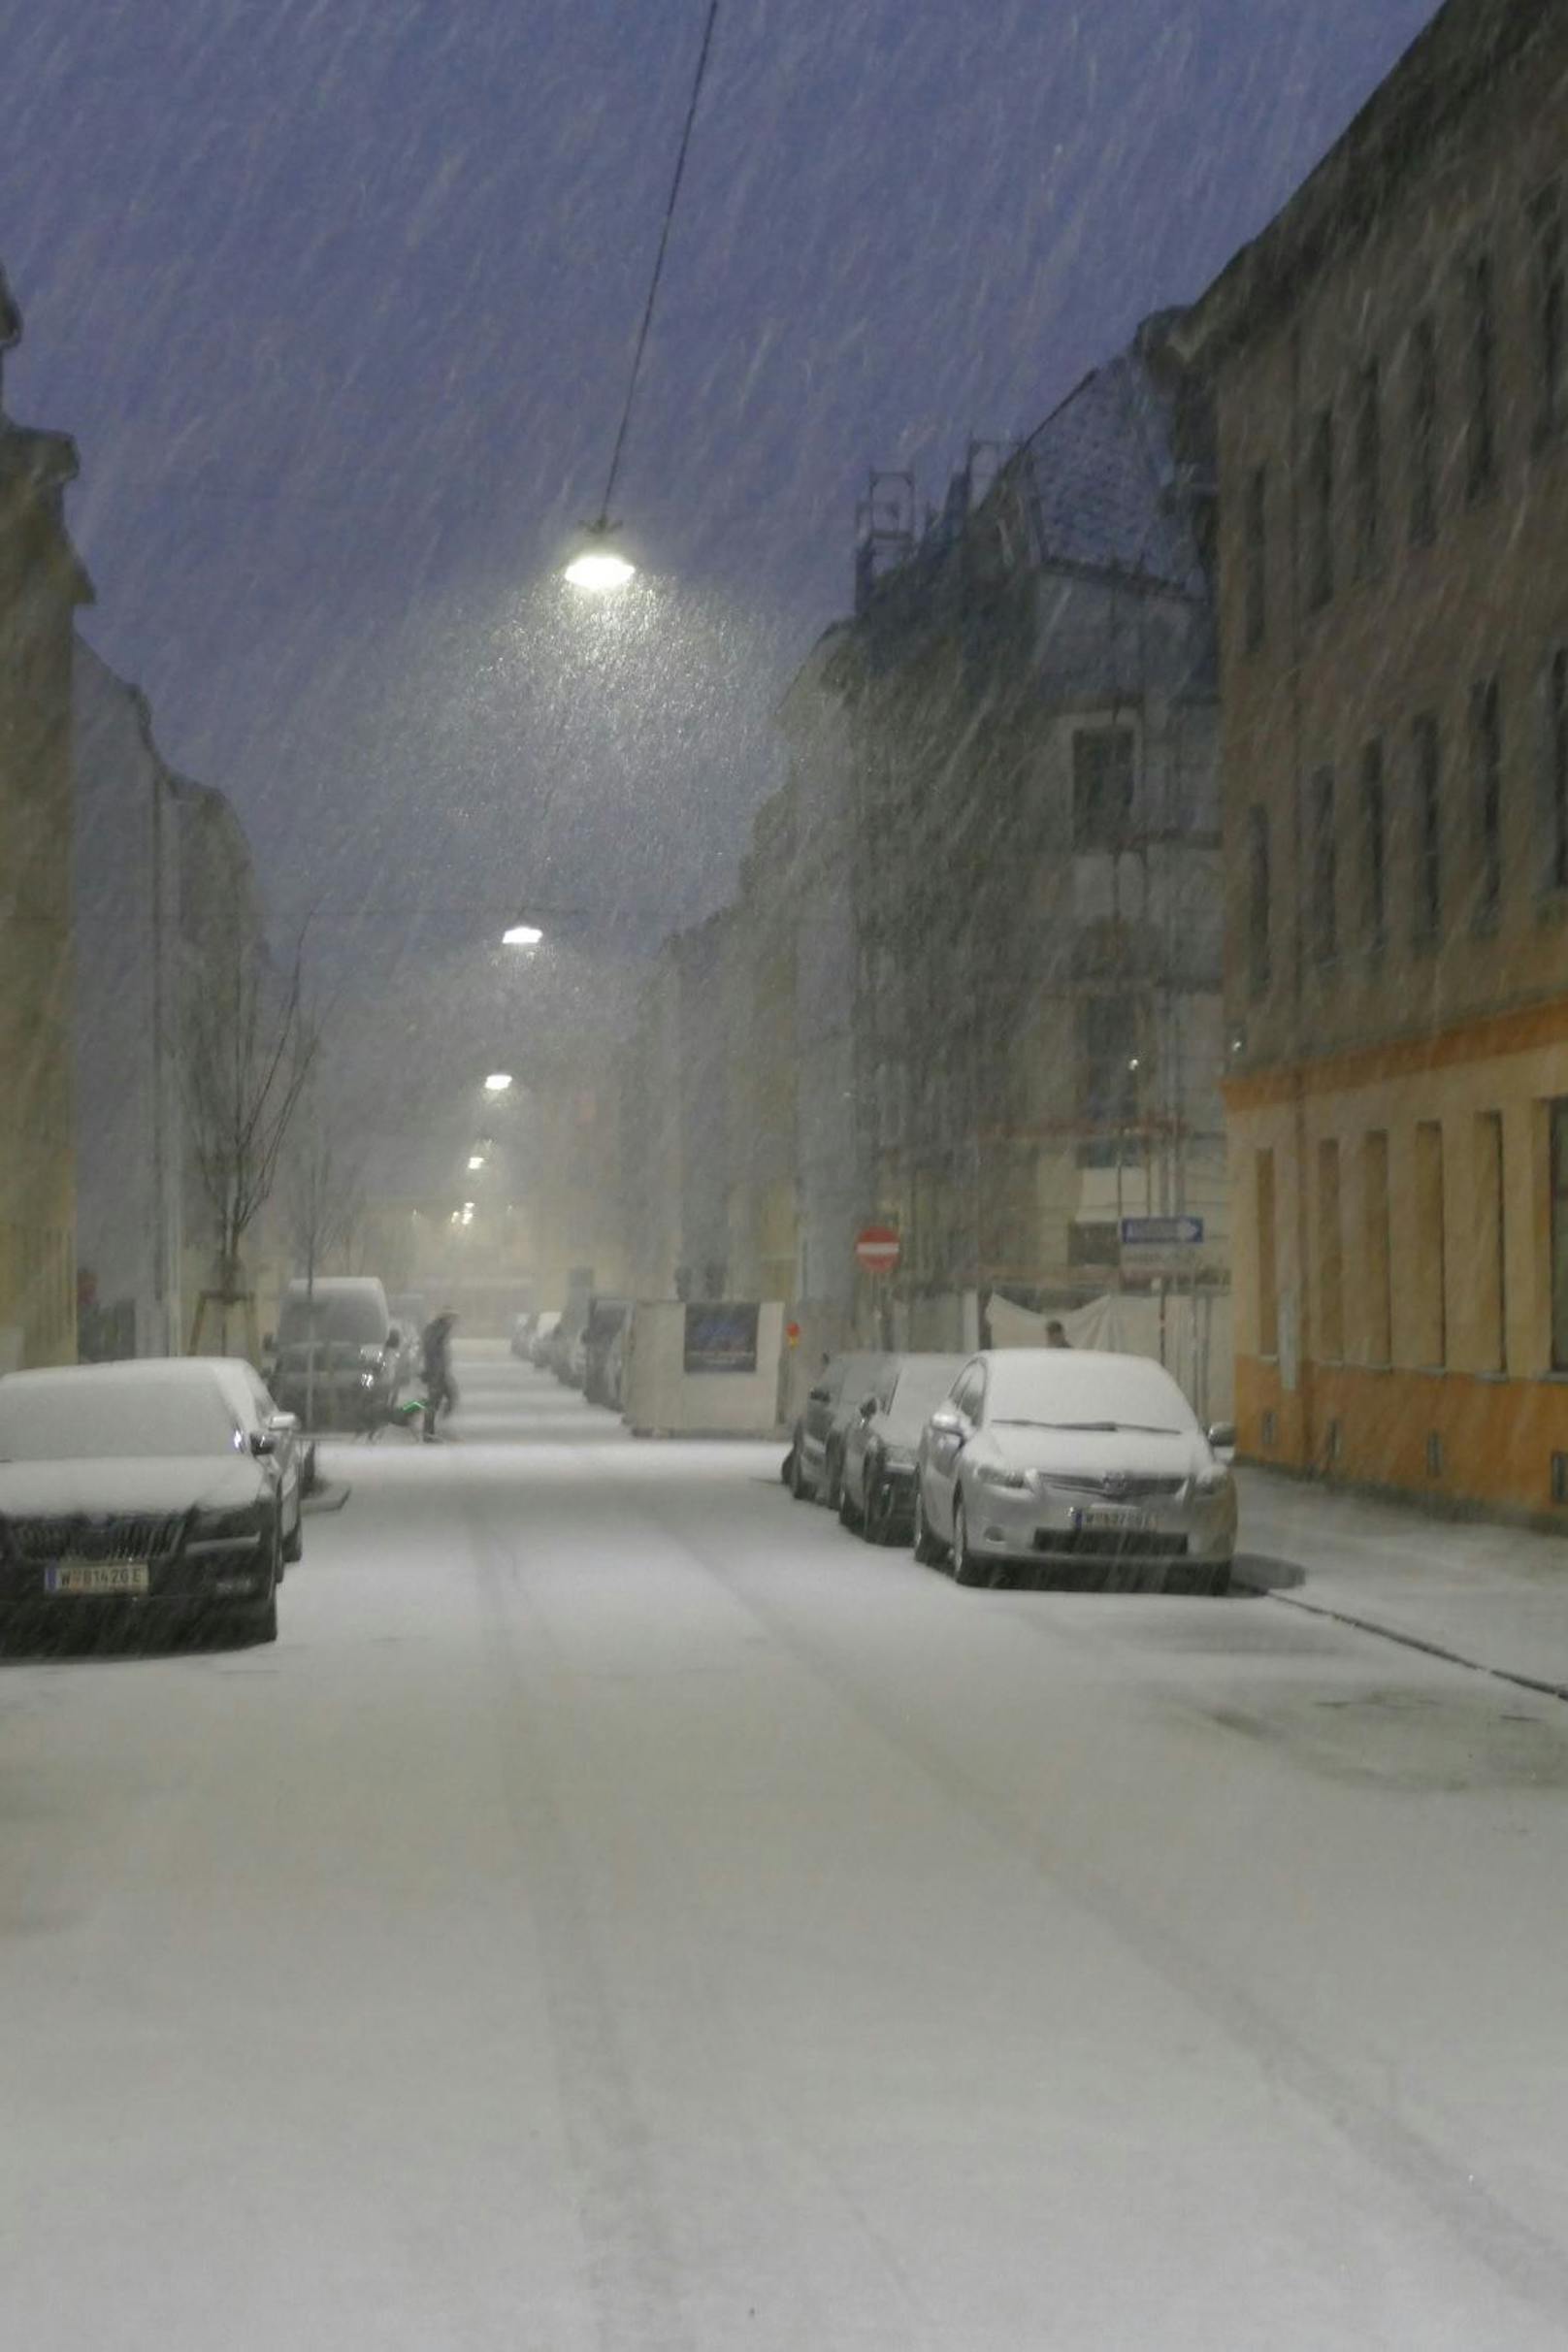 Starker Schneefall am Montagmorgen in Wien-Hernals